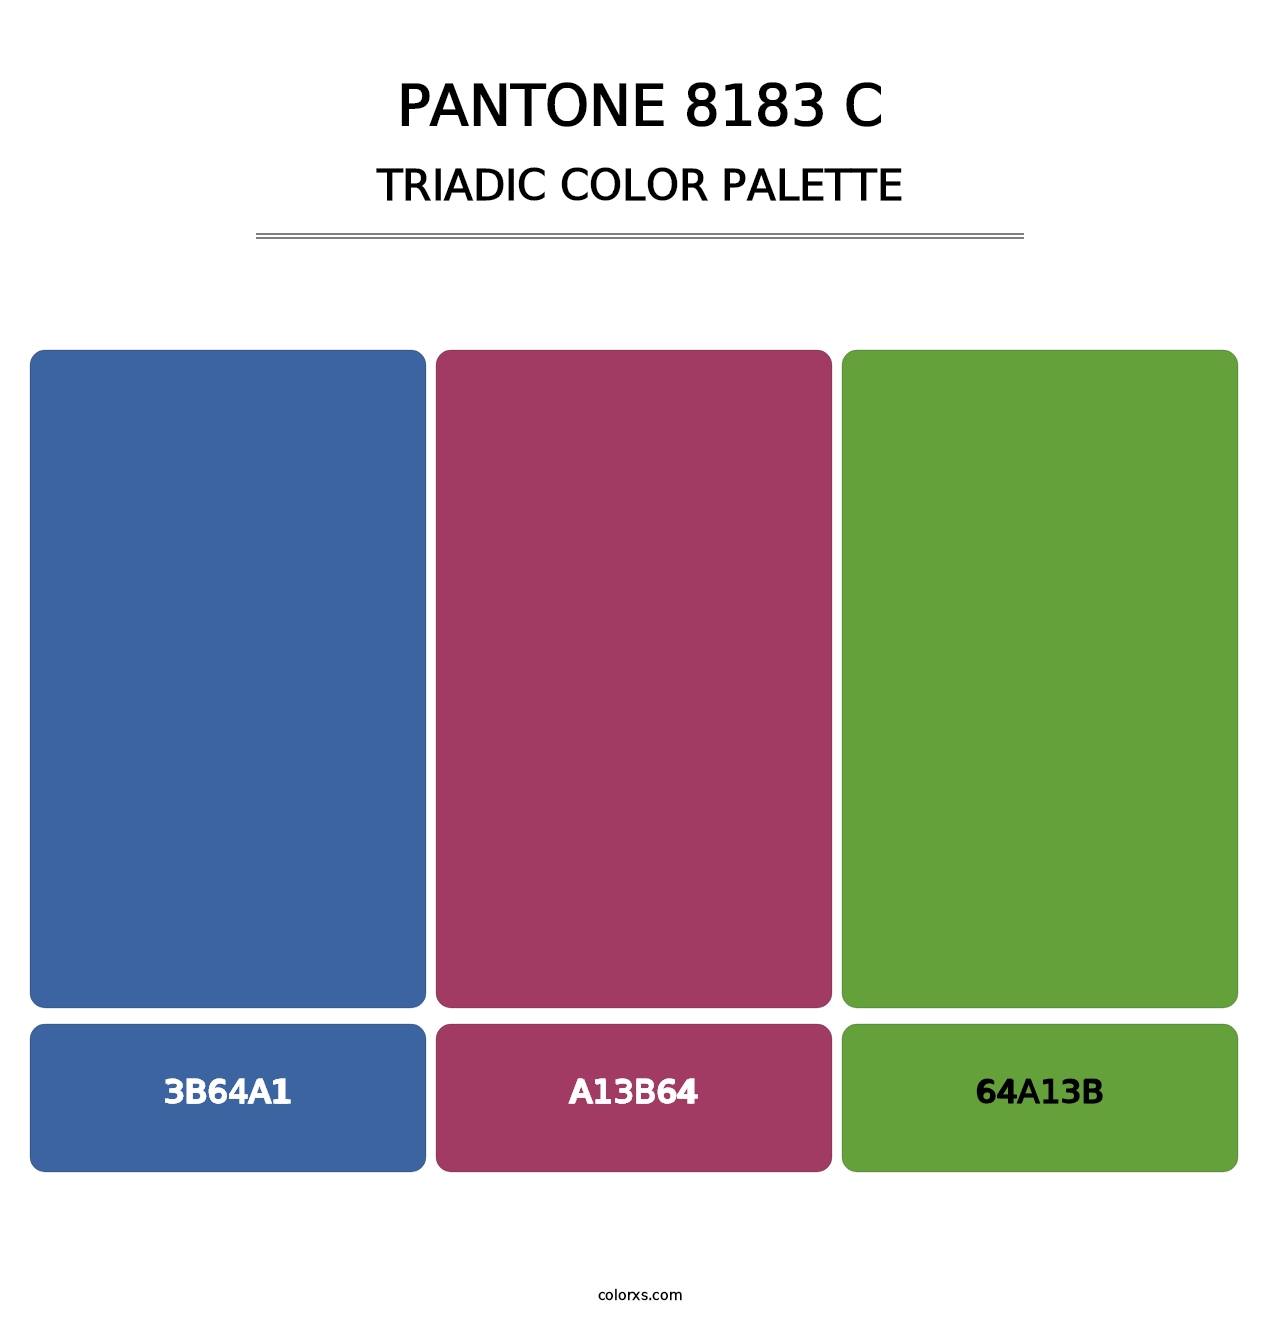 PANTONE 8183 C - Triadic Color Palette